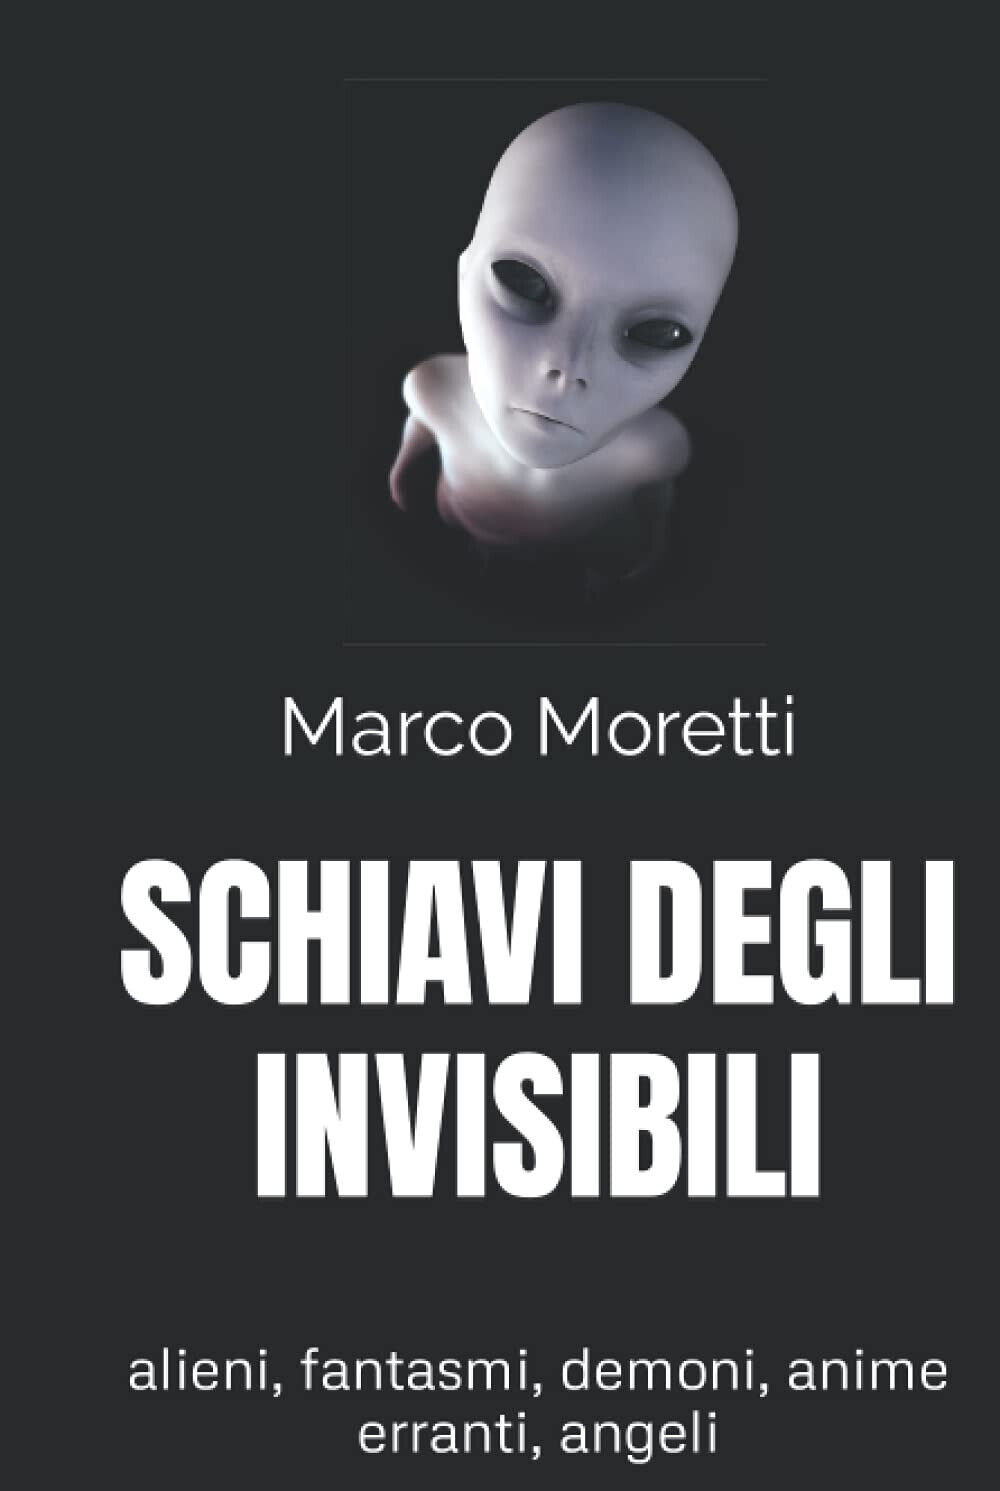 SCHIAVI DEGLI INVISIBILI - Marco Moretti - Independently published, 2021